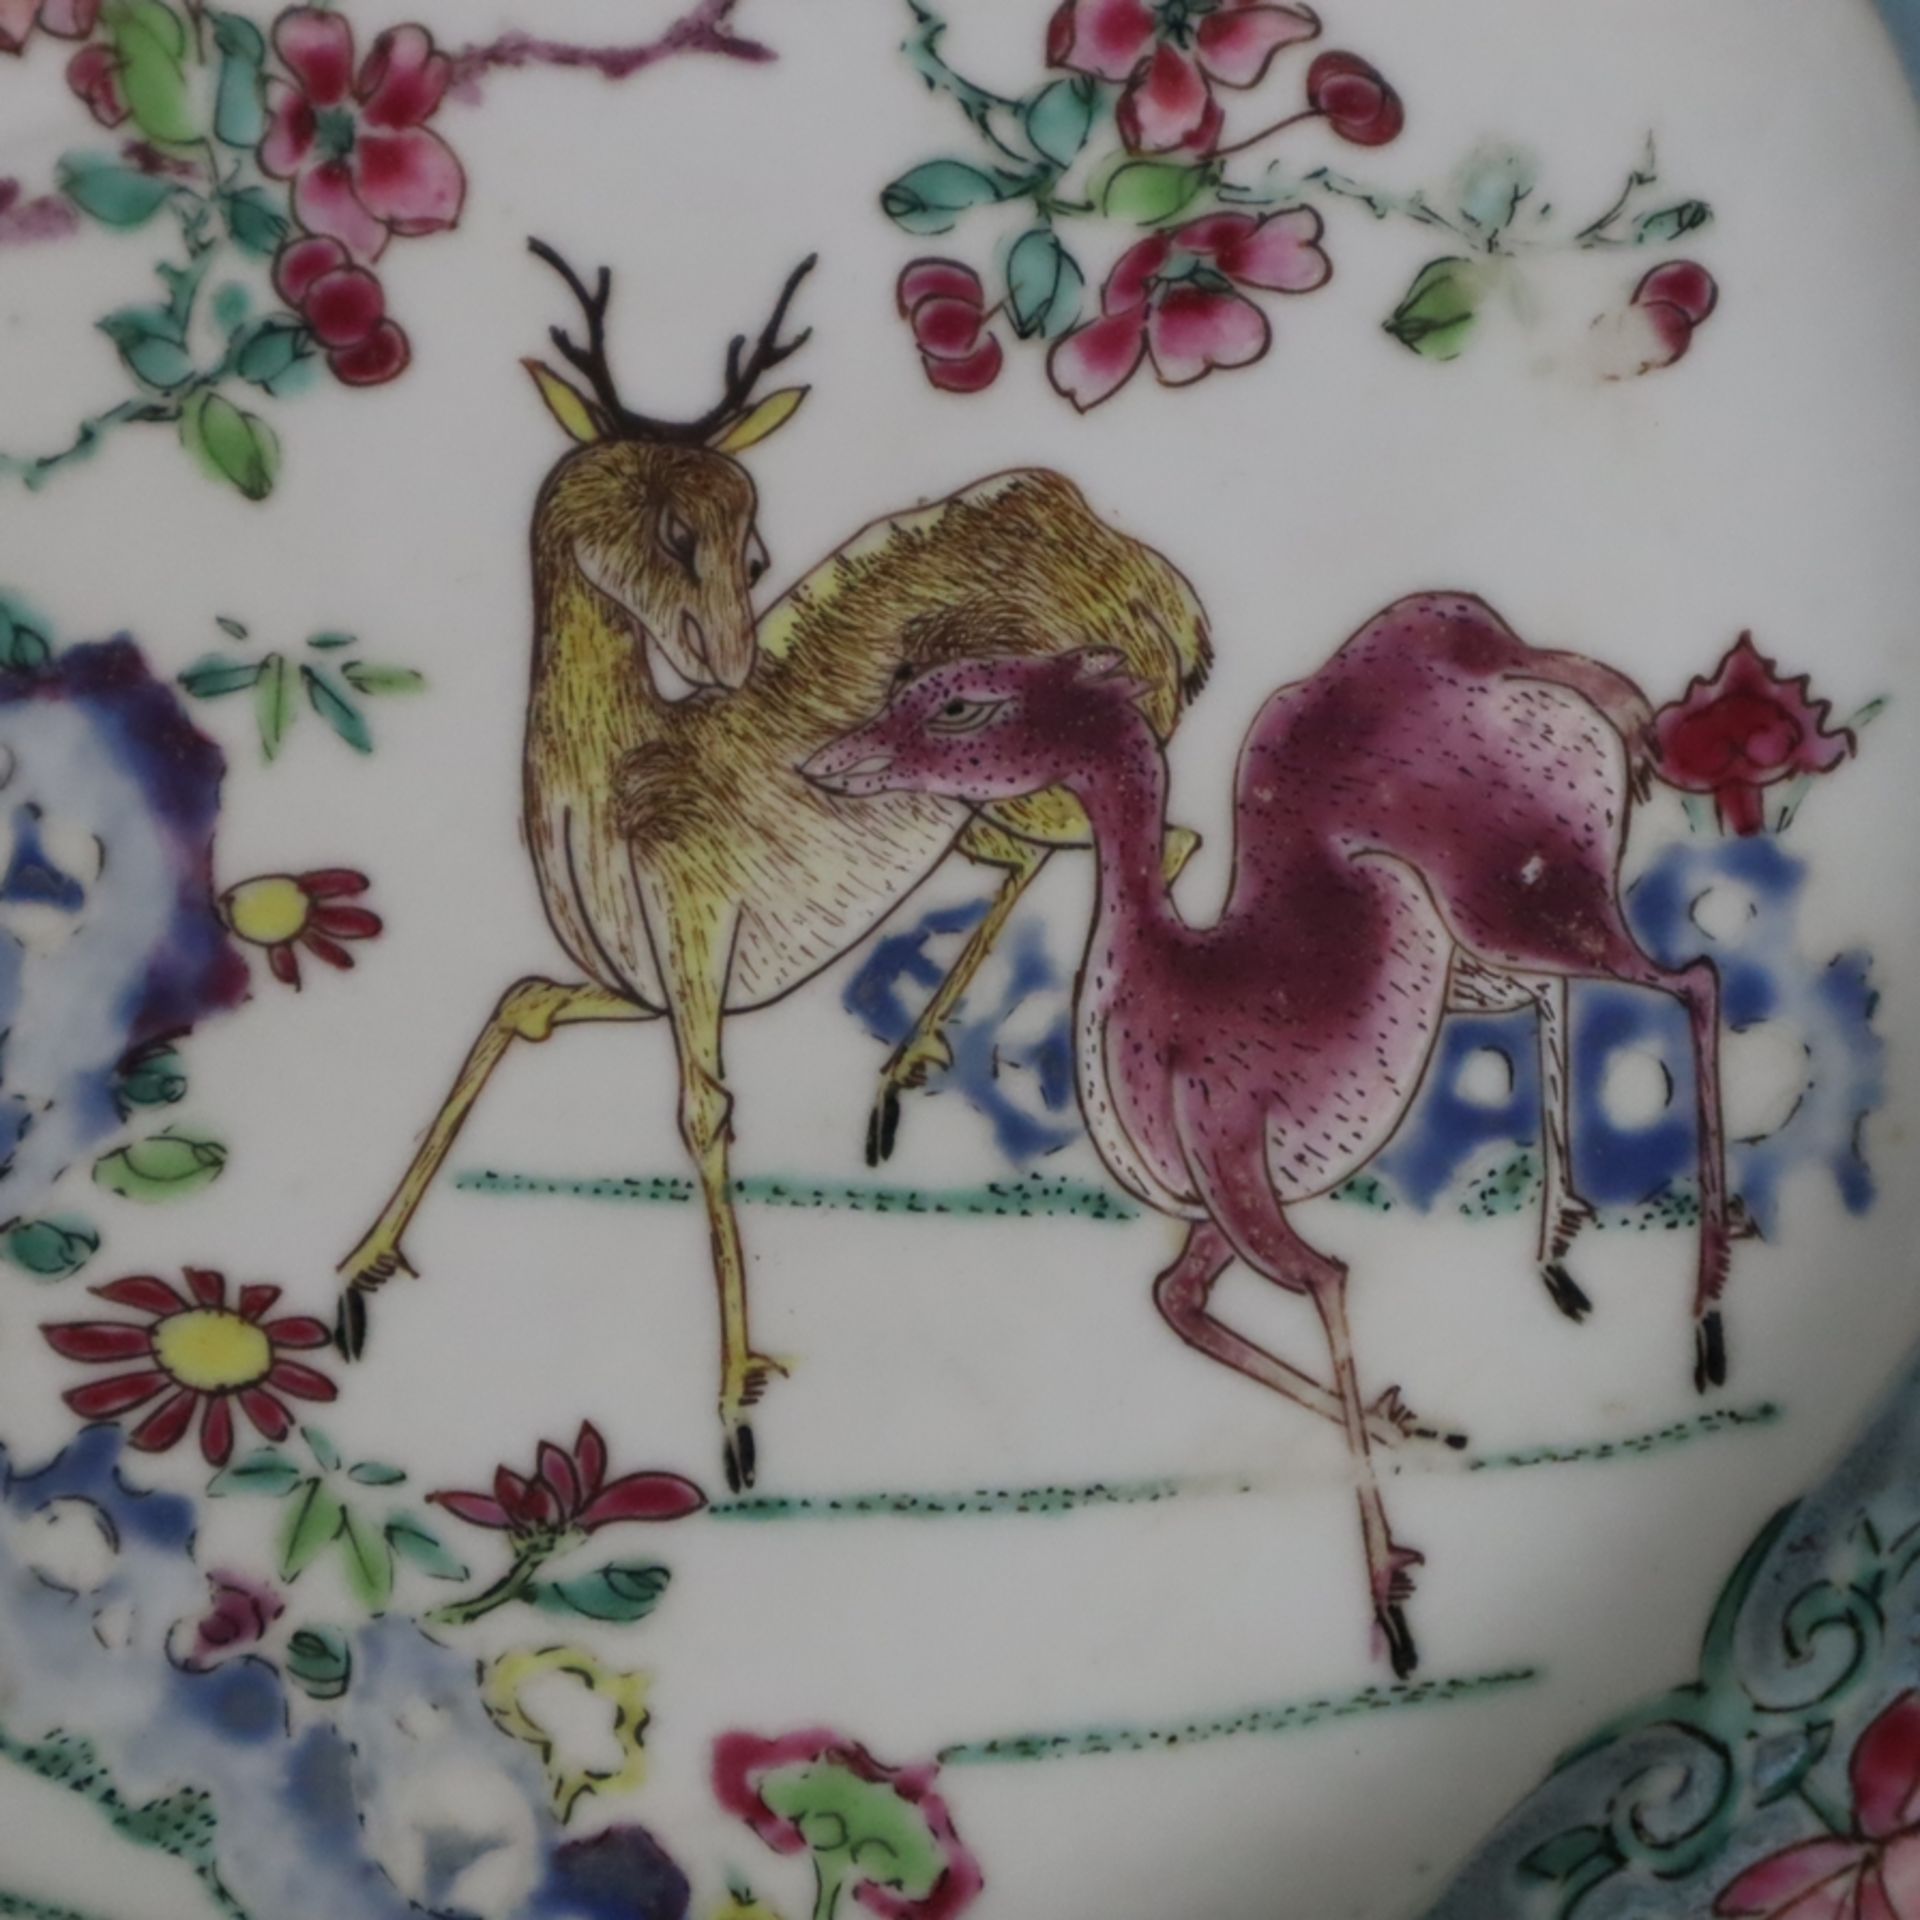 Ein Paar kleine Famille rose-Teller - dekoriert in den Farben der Famille rose mit einem Hirschpaar - Image 3 of 10